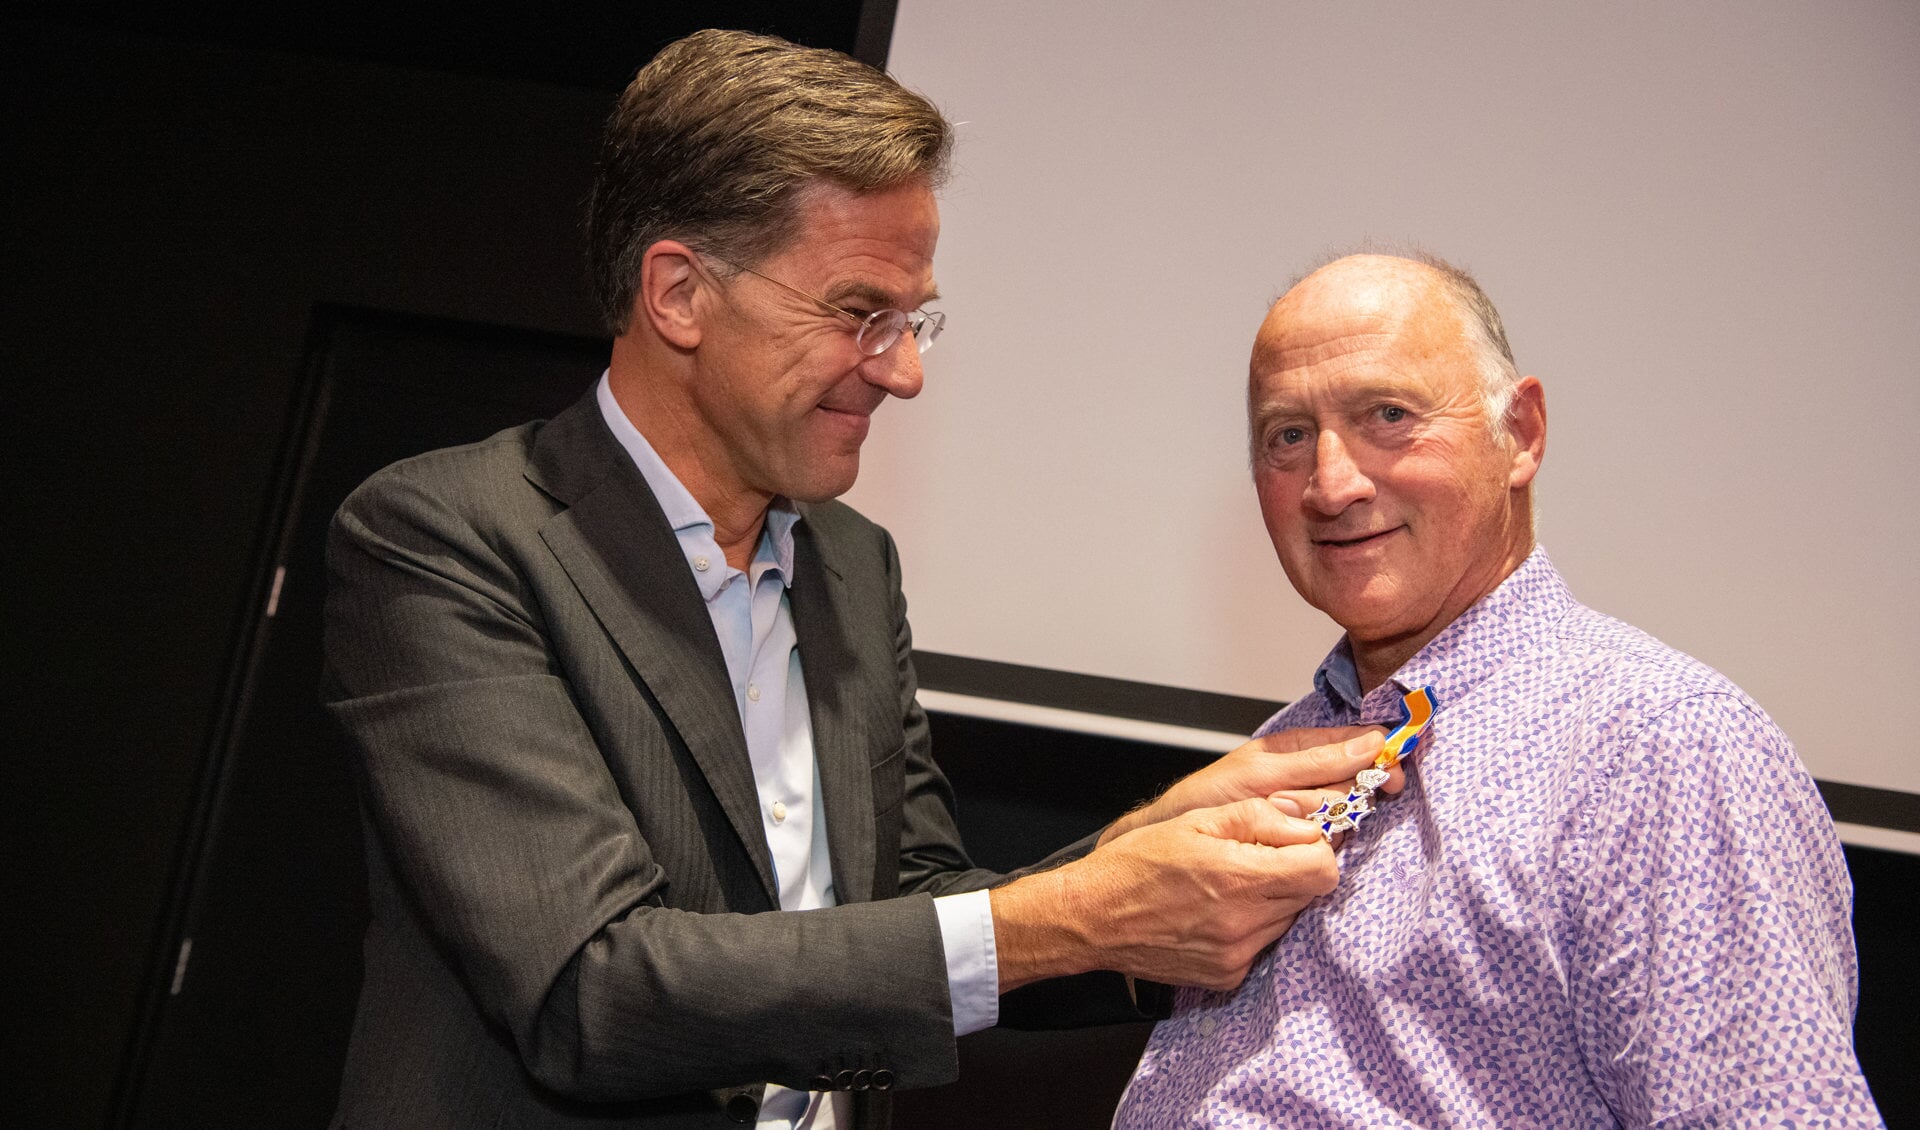 Uit handen van Mark Rutte kreeg Jack Keijzer zijn Koninklijke onderscheiding uitgereikt.